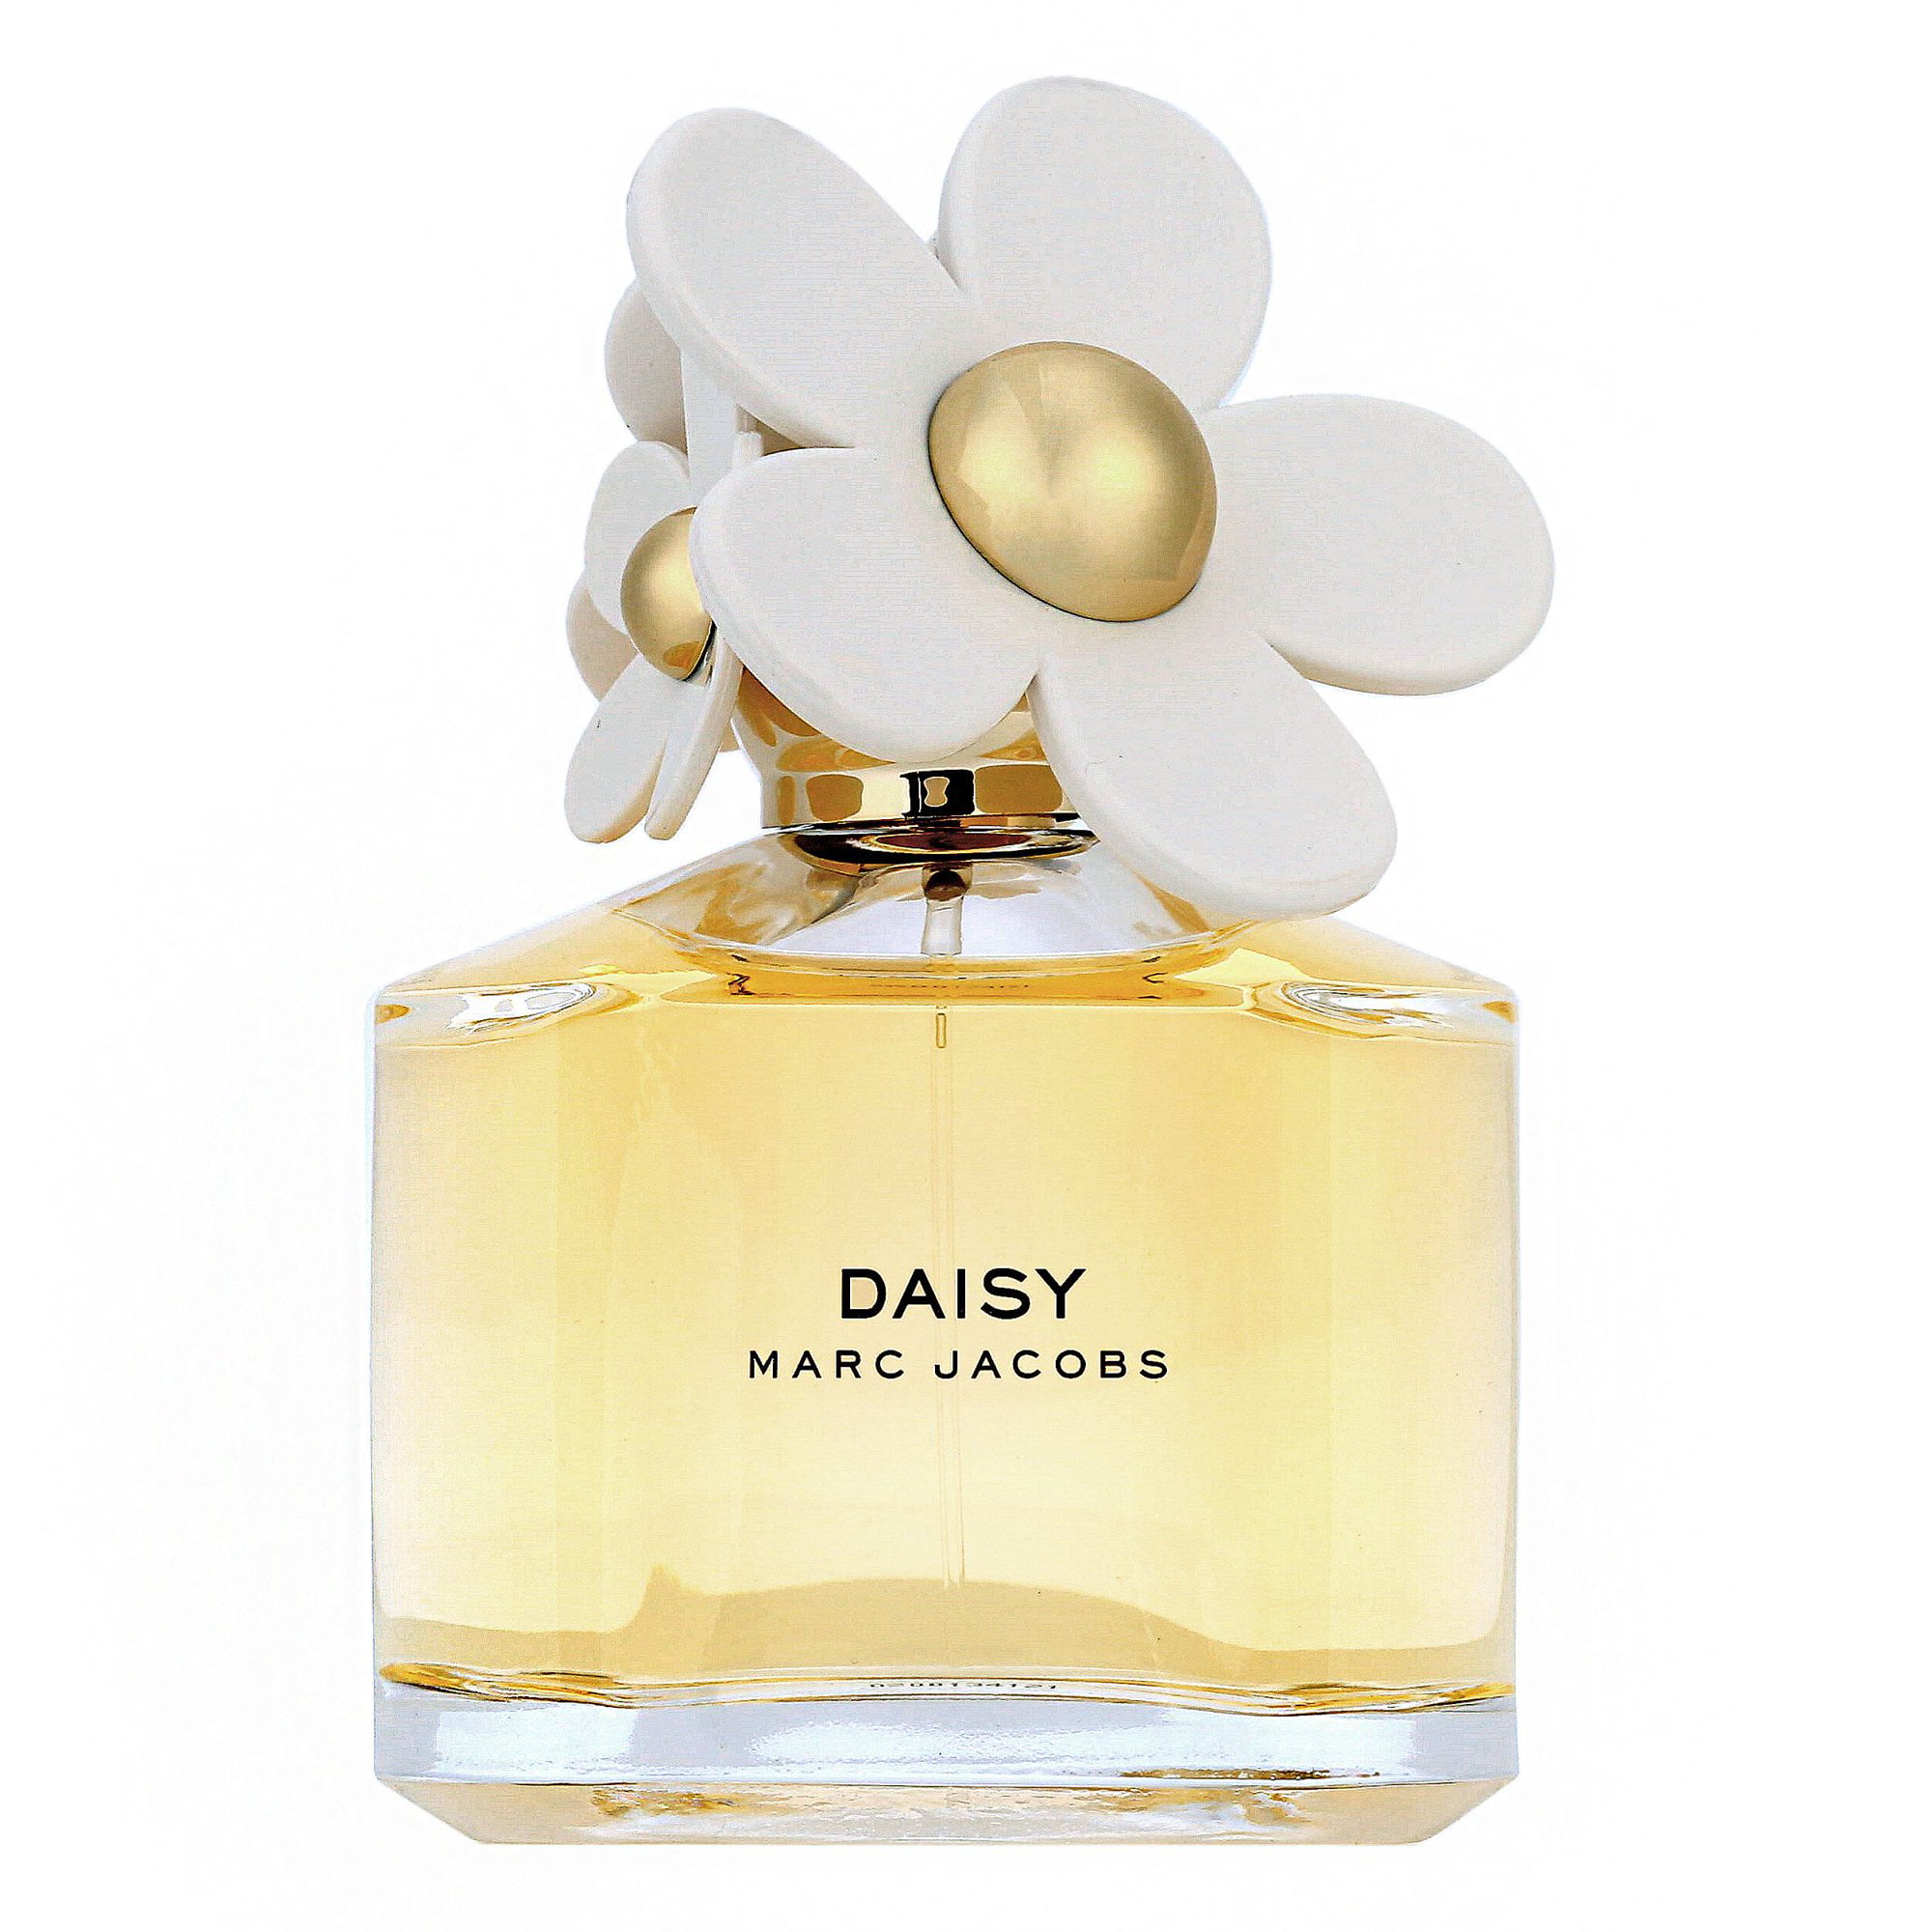 Marc_Jacobs_Daisy Eau de Toilette, 3.4 Oz,Perfume for Women